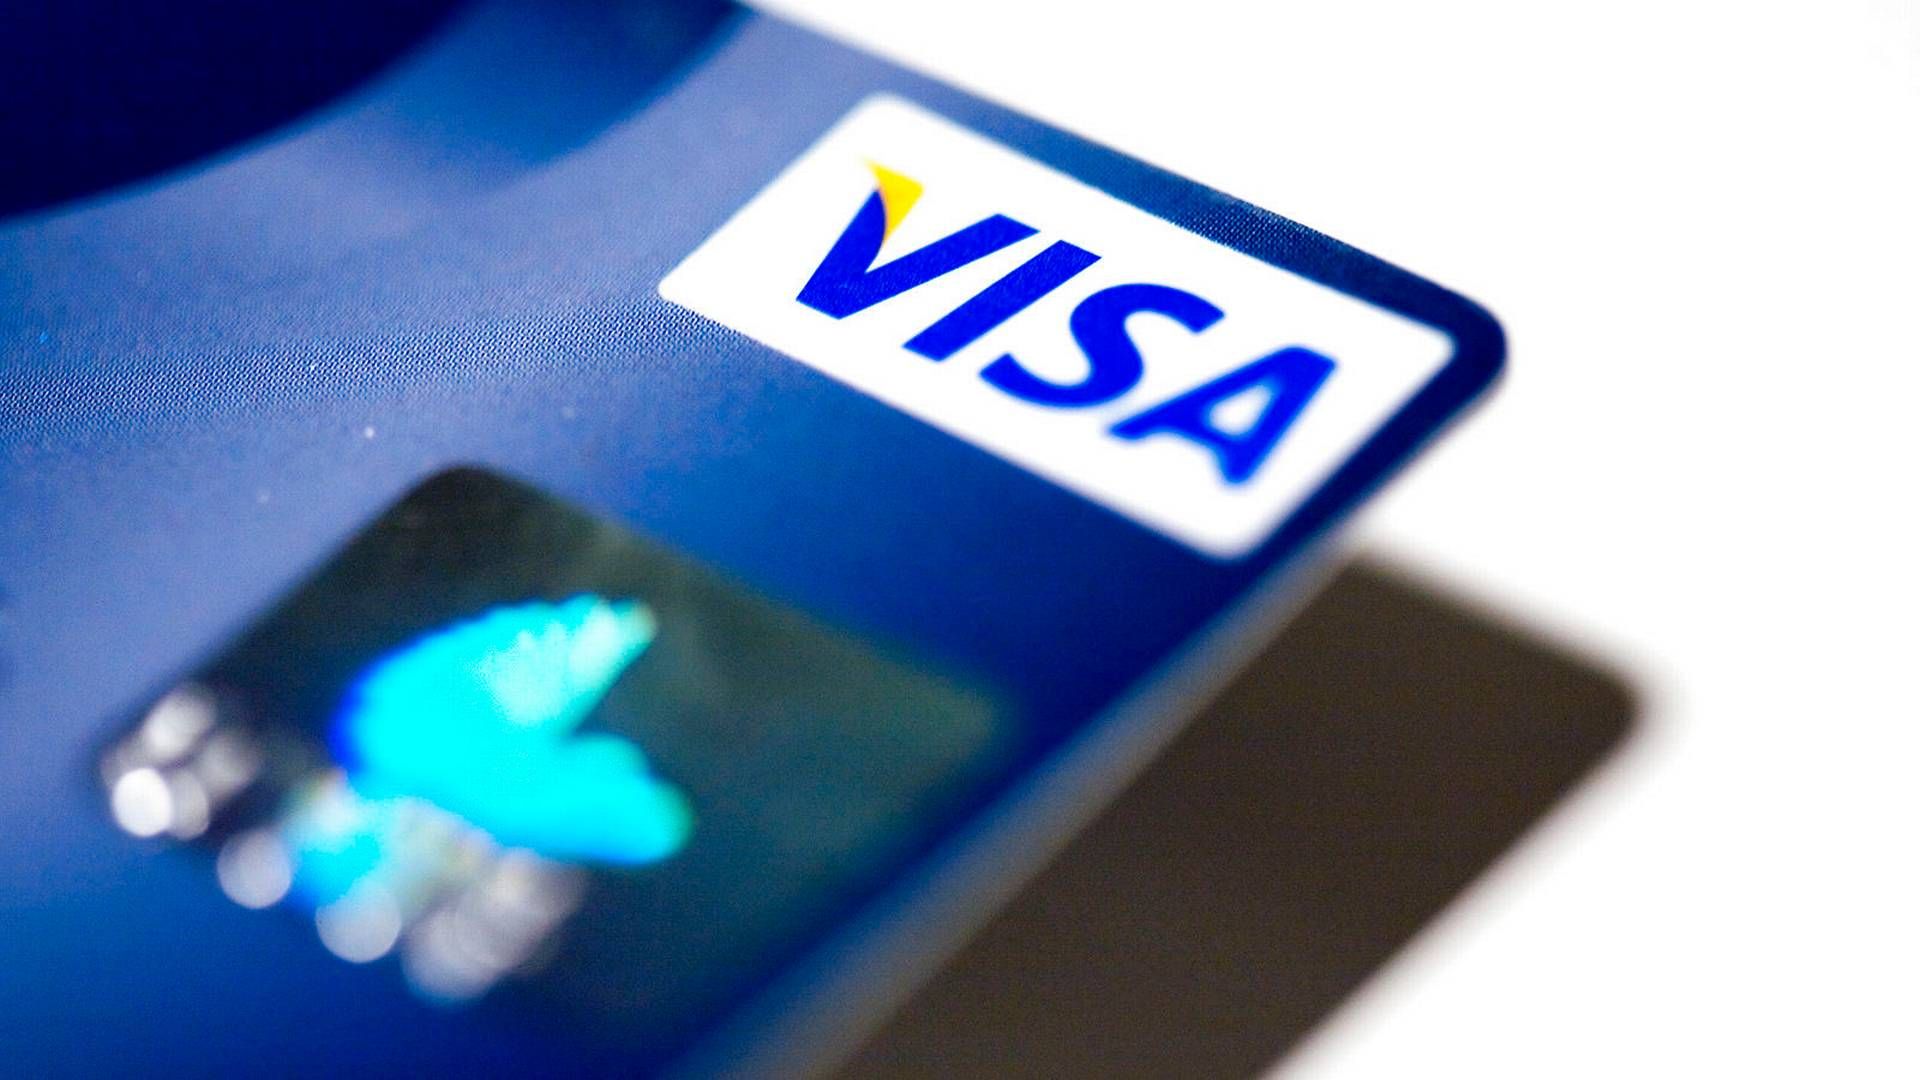 Opkrævning af tillæg for udenlandske køb på Visa/Dankort er omdrejningspunktet for påbuddet fra Konkurrencerådet. | Foto: Thomas Borberg/Politiken/Ritzau Scanpix